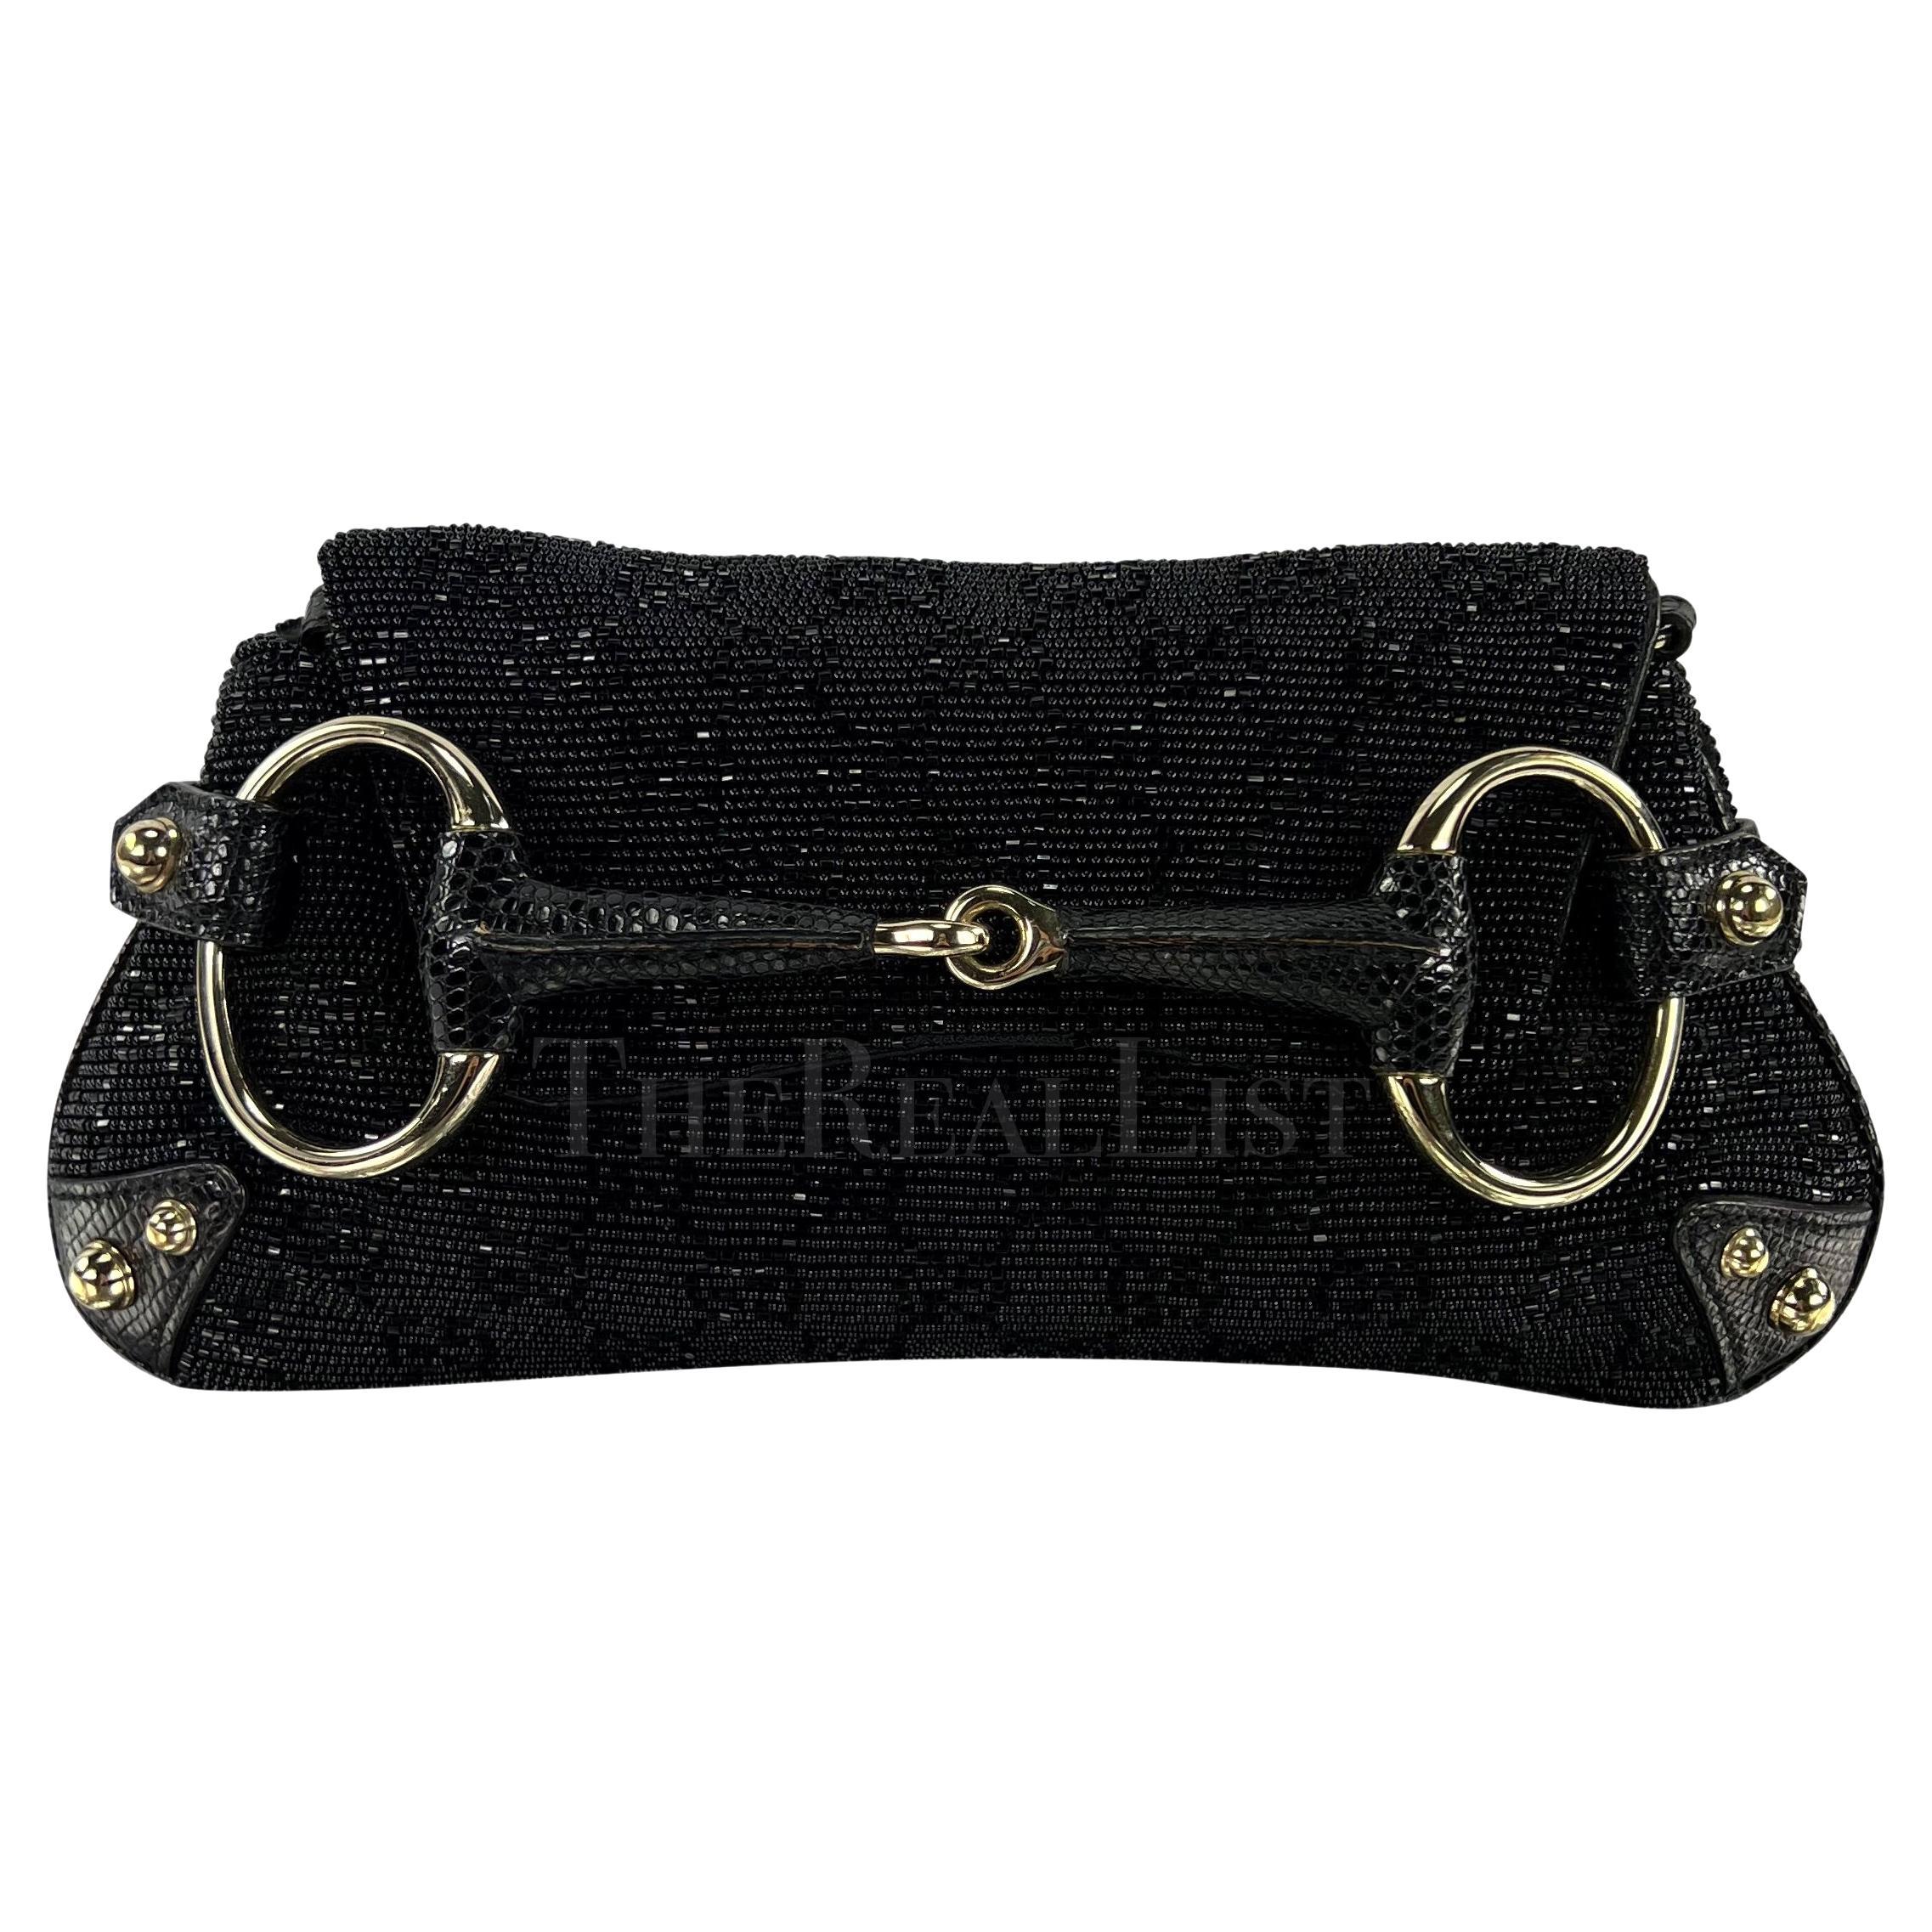 TheRealList präsentiert: eine schwarze perlenbesetzte GG Gucci-Pferdebiss-Tasche, entworfen von Tom Ford. Diese klassische Ford-Pferdebeuteltasche aus den frühen 2000er Jahren ist mit dem emblematischen 